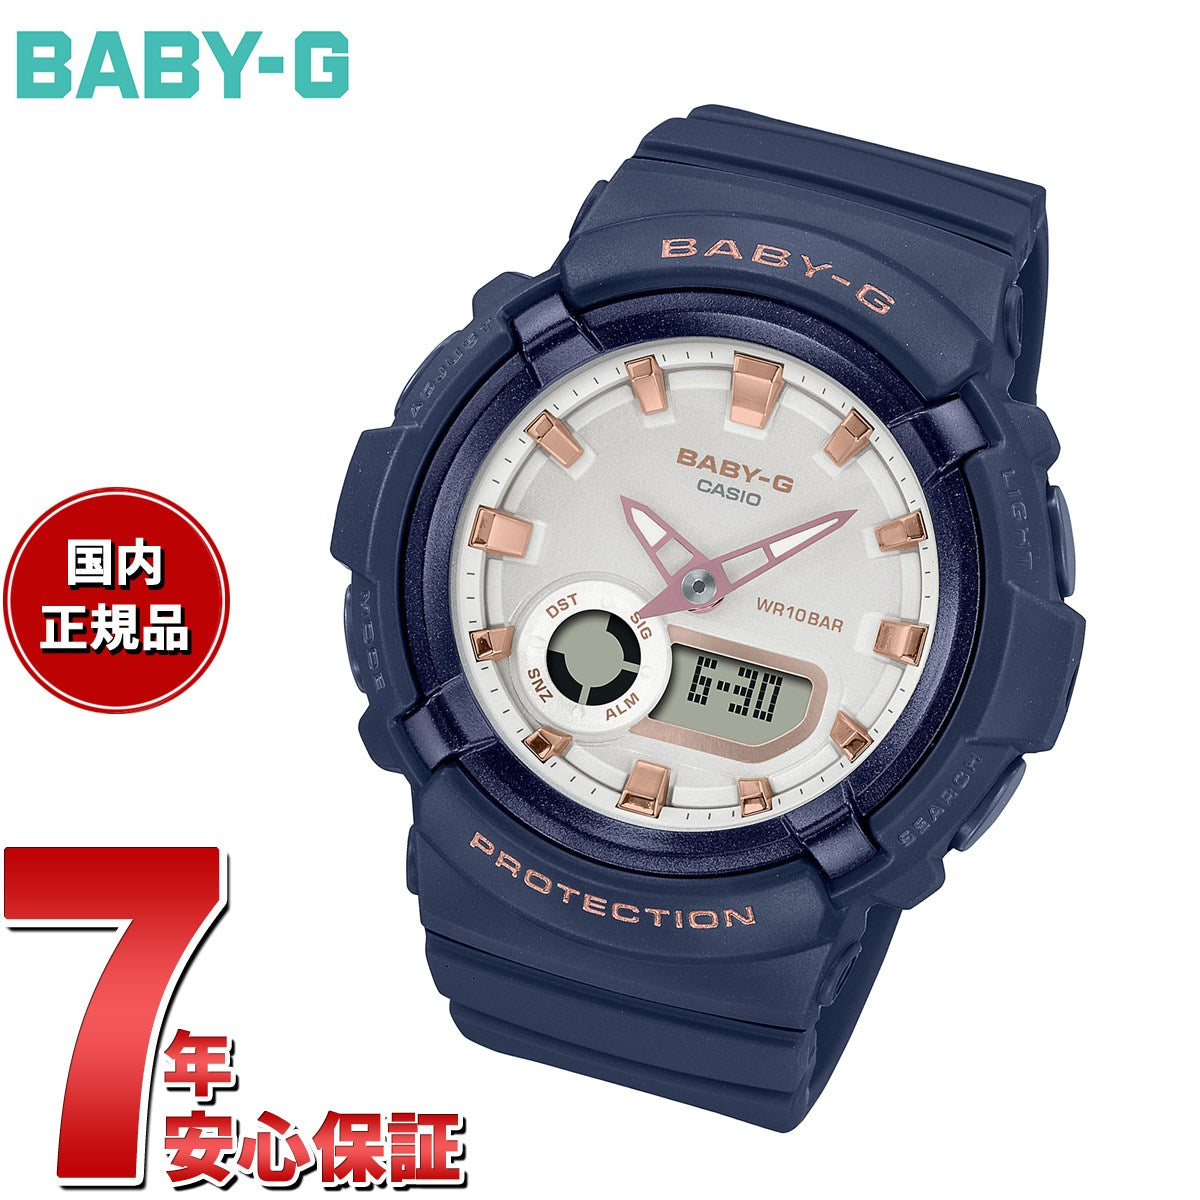 BABY-G カシオ ベビーG レディース 腕時計 BGA-280BA-2AJF ネイビー